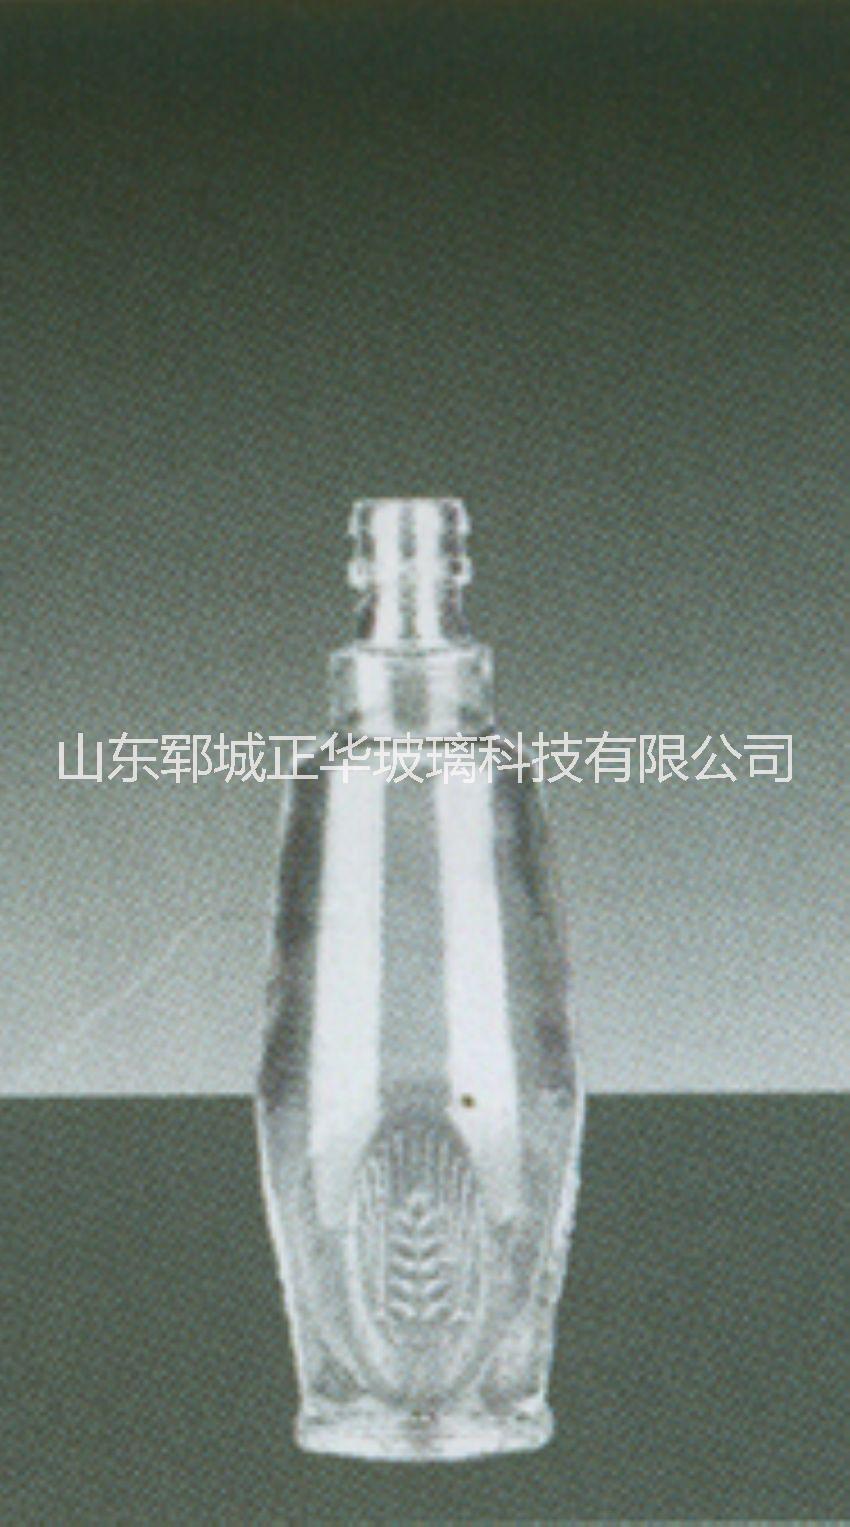 125ml酒瓶厂家定制 优质125ml酒瓶 125毫升酒瓶批发